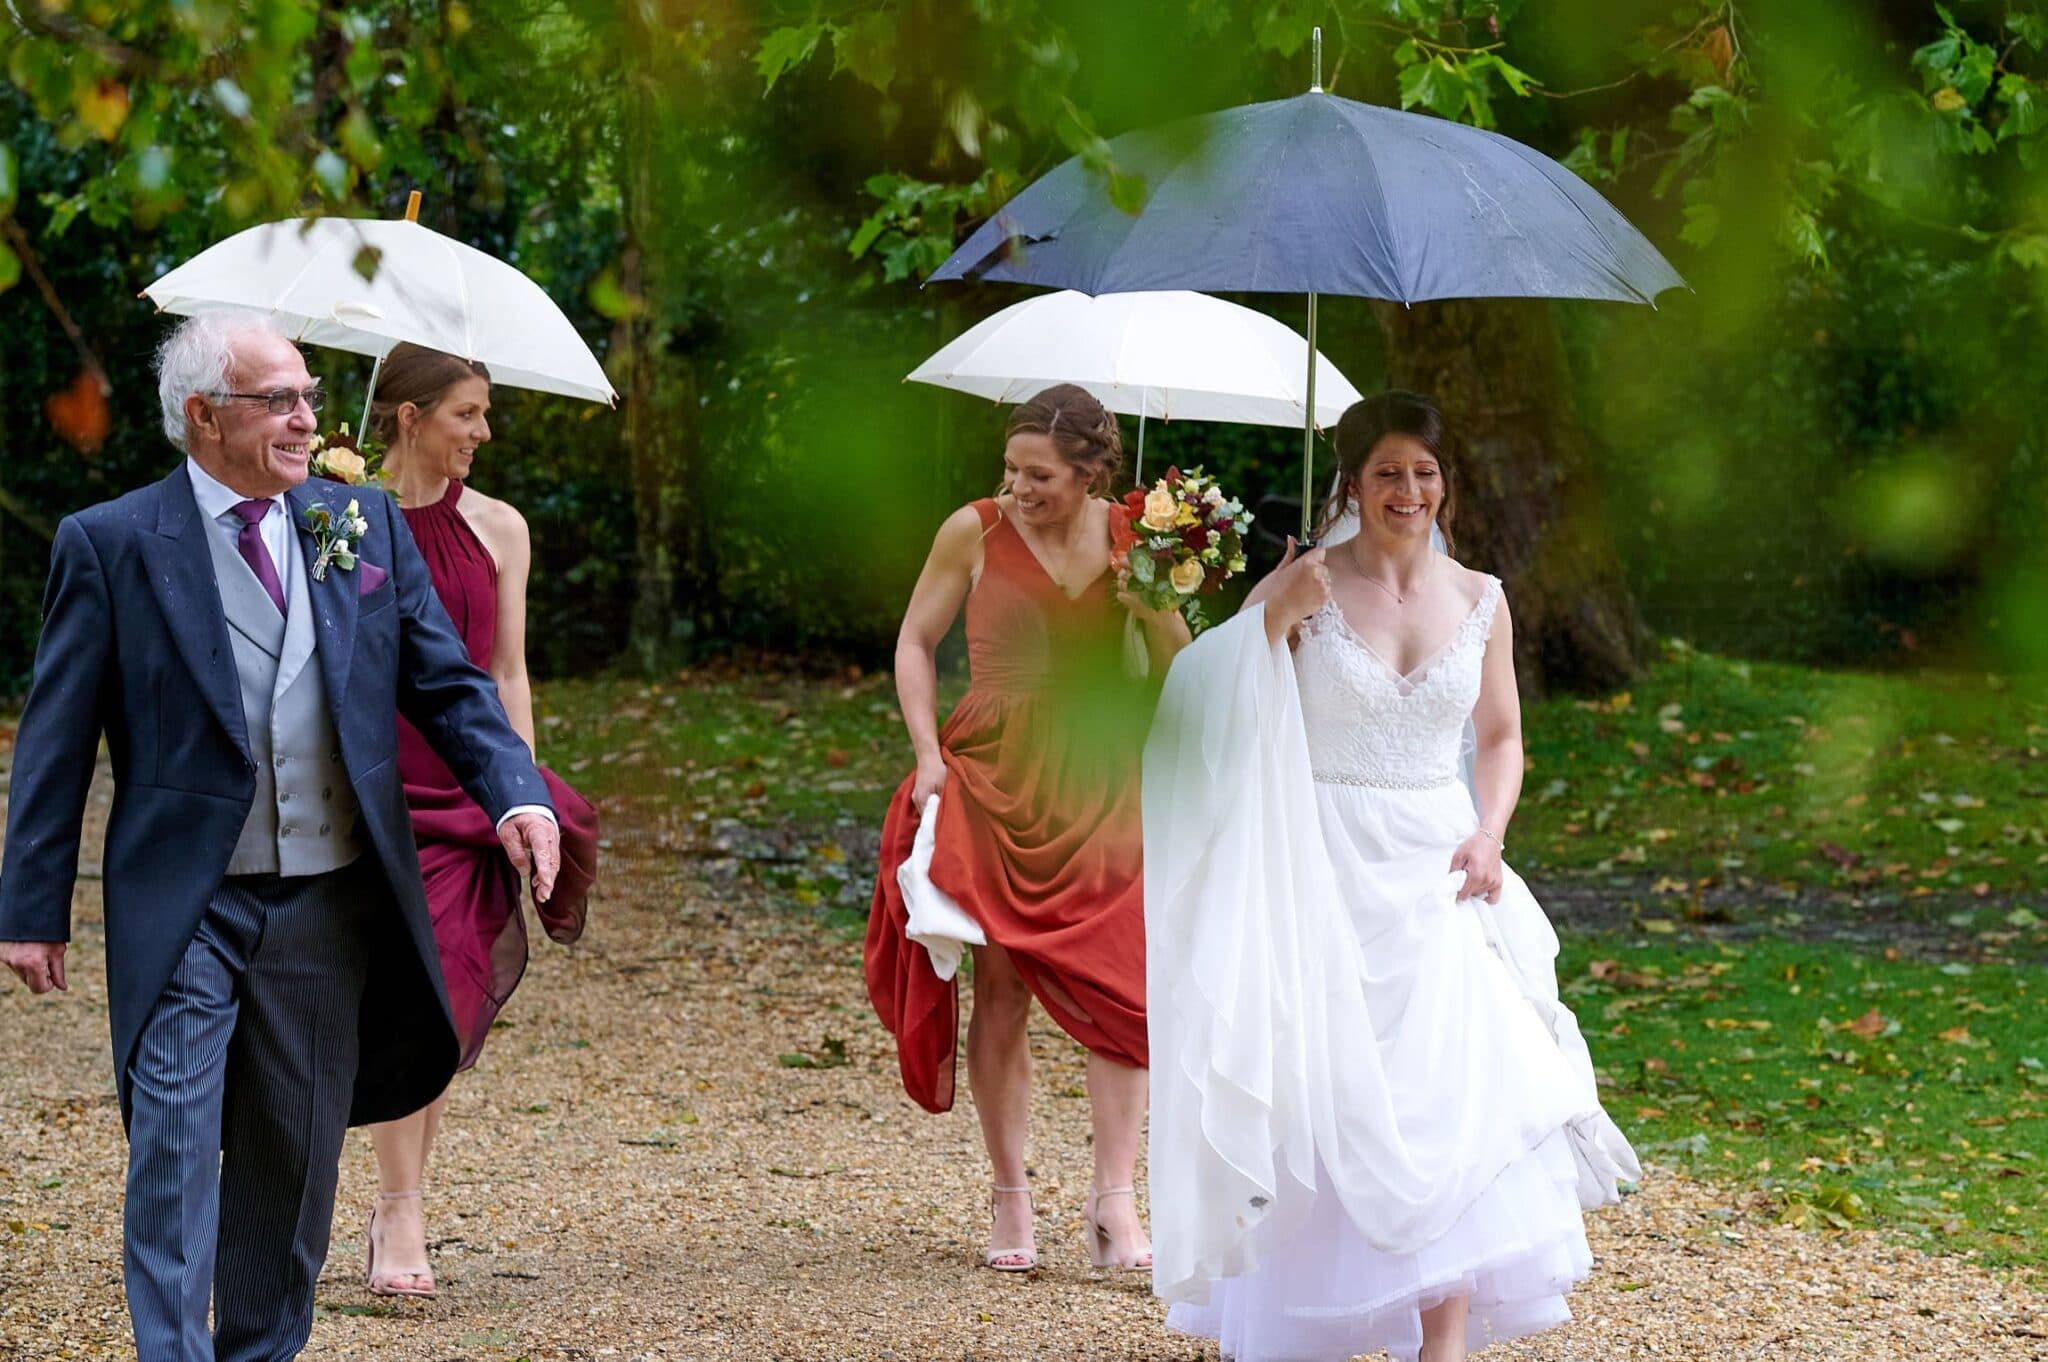 Bride with Umbrella at Brownsea Island wedding